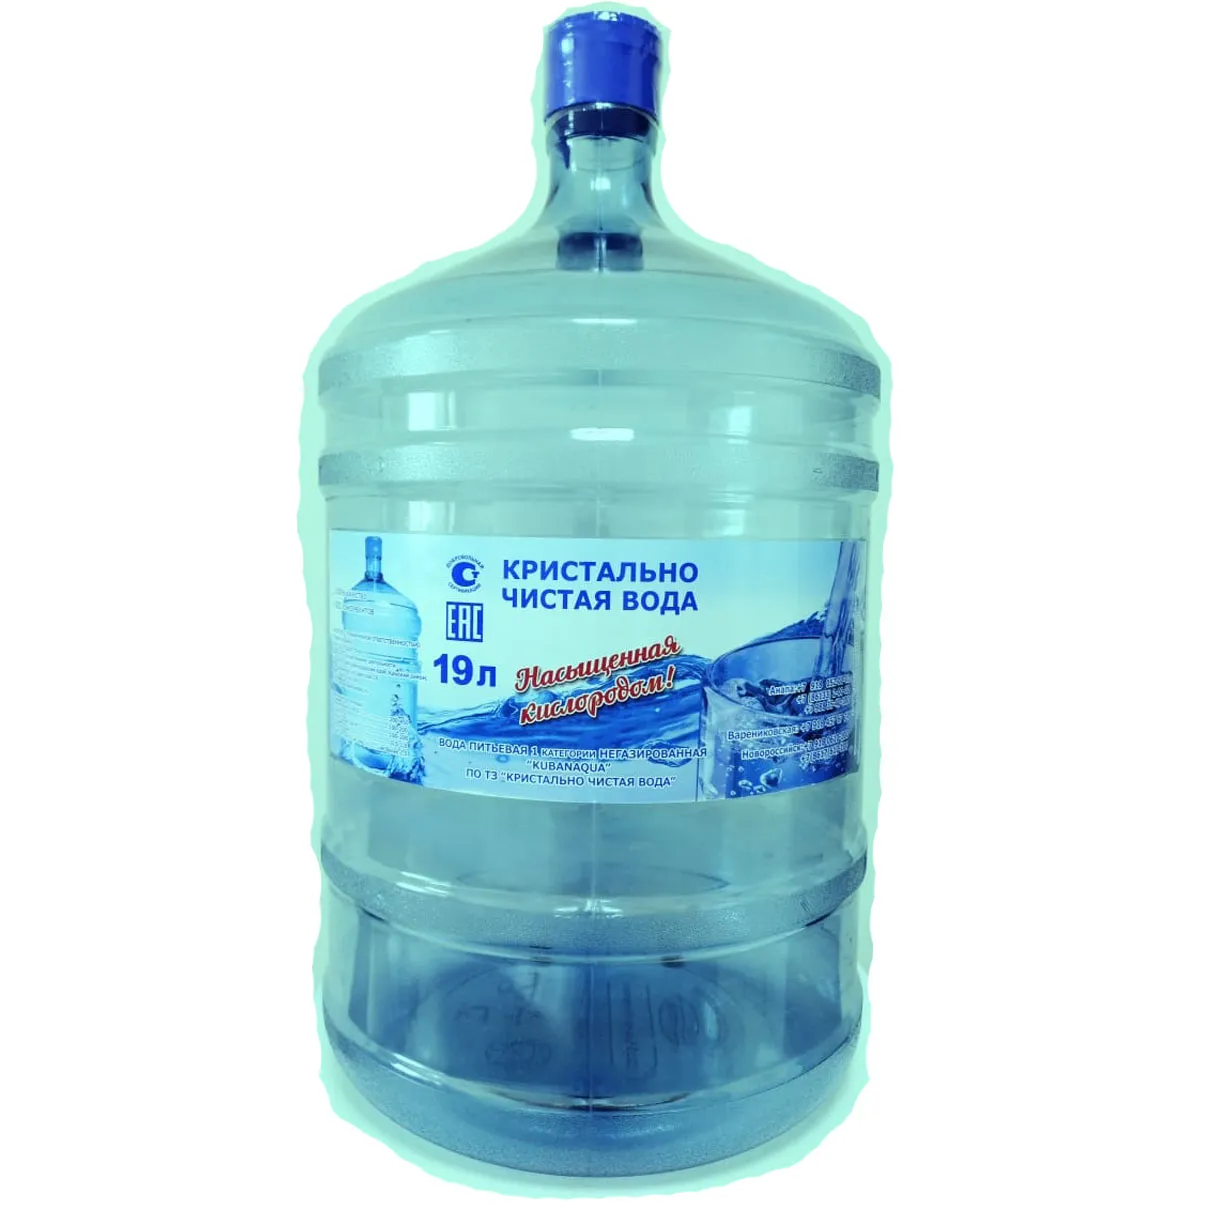 Заказать воду с доставкой дона. Вода в бутылях. Бутилированной воды. Чистая вода. Чистая вода в бутылях.